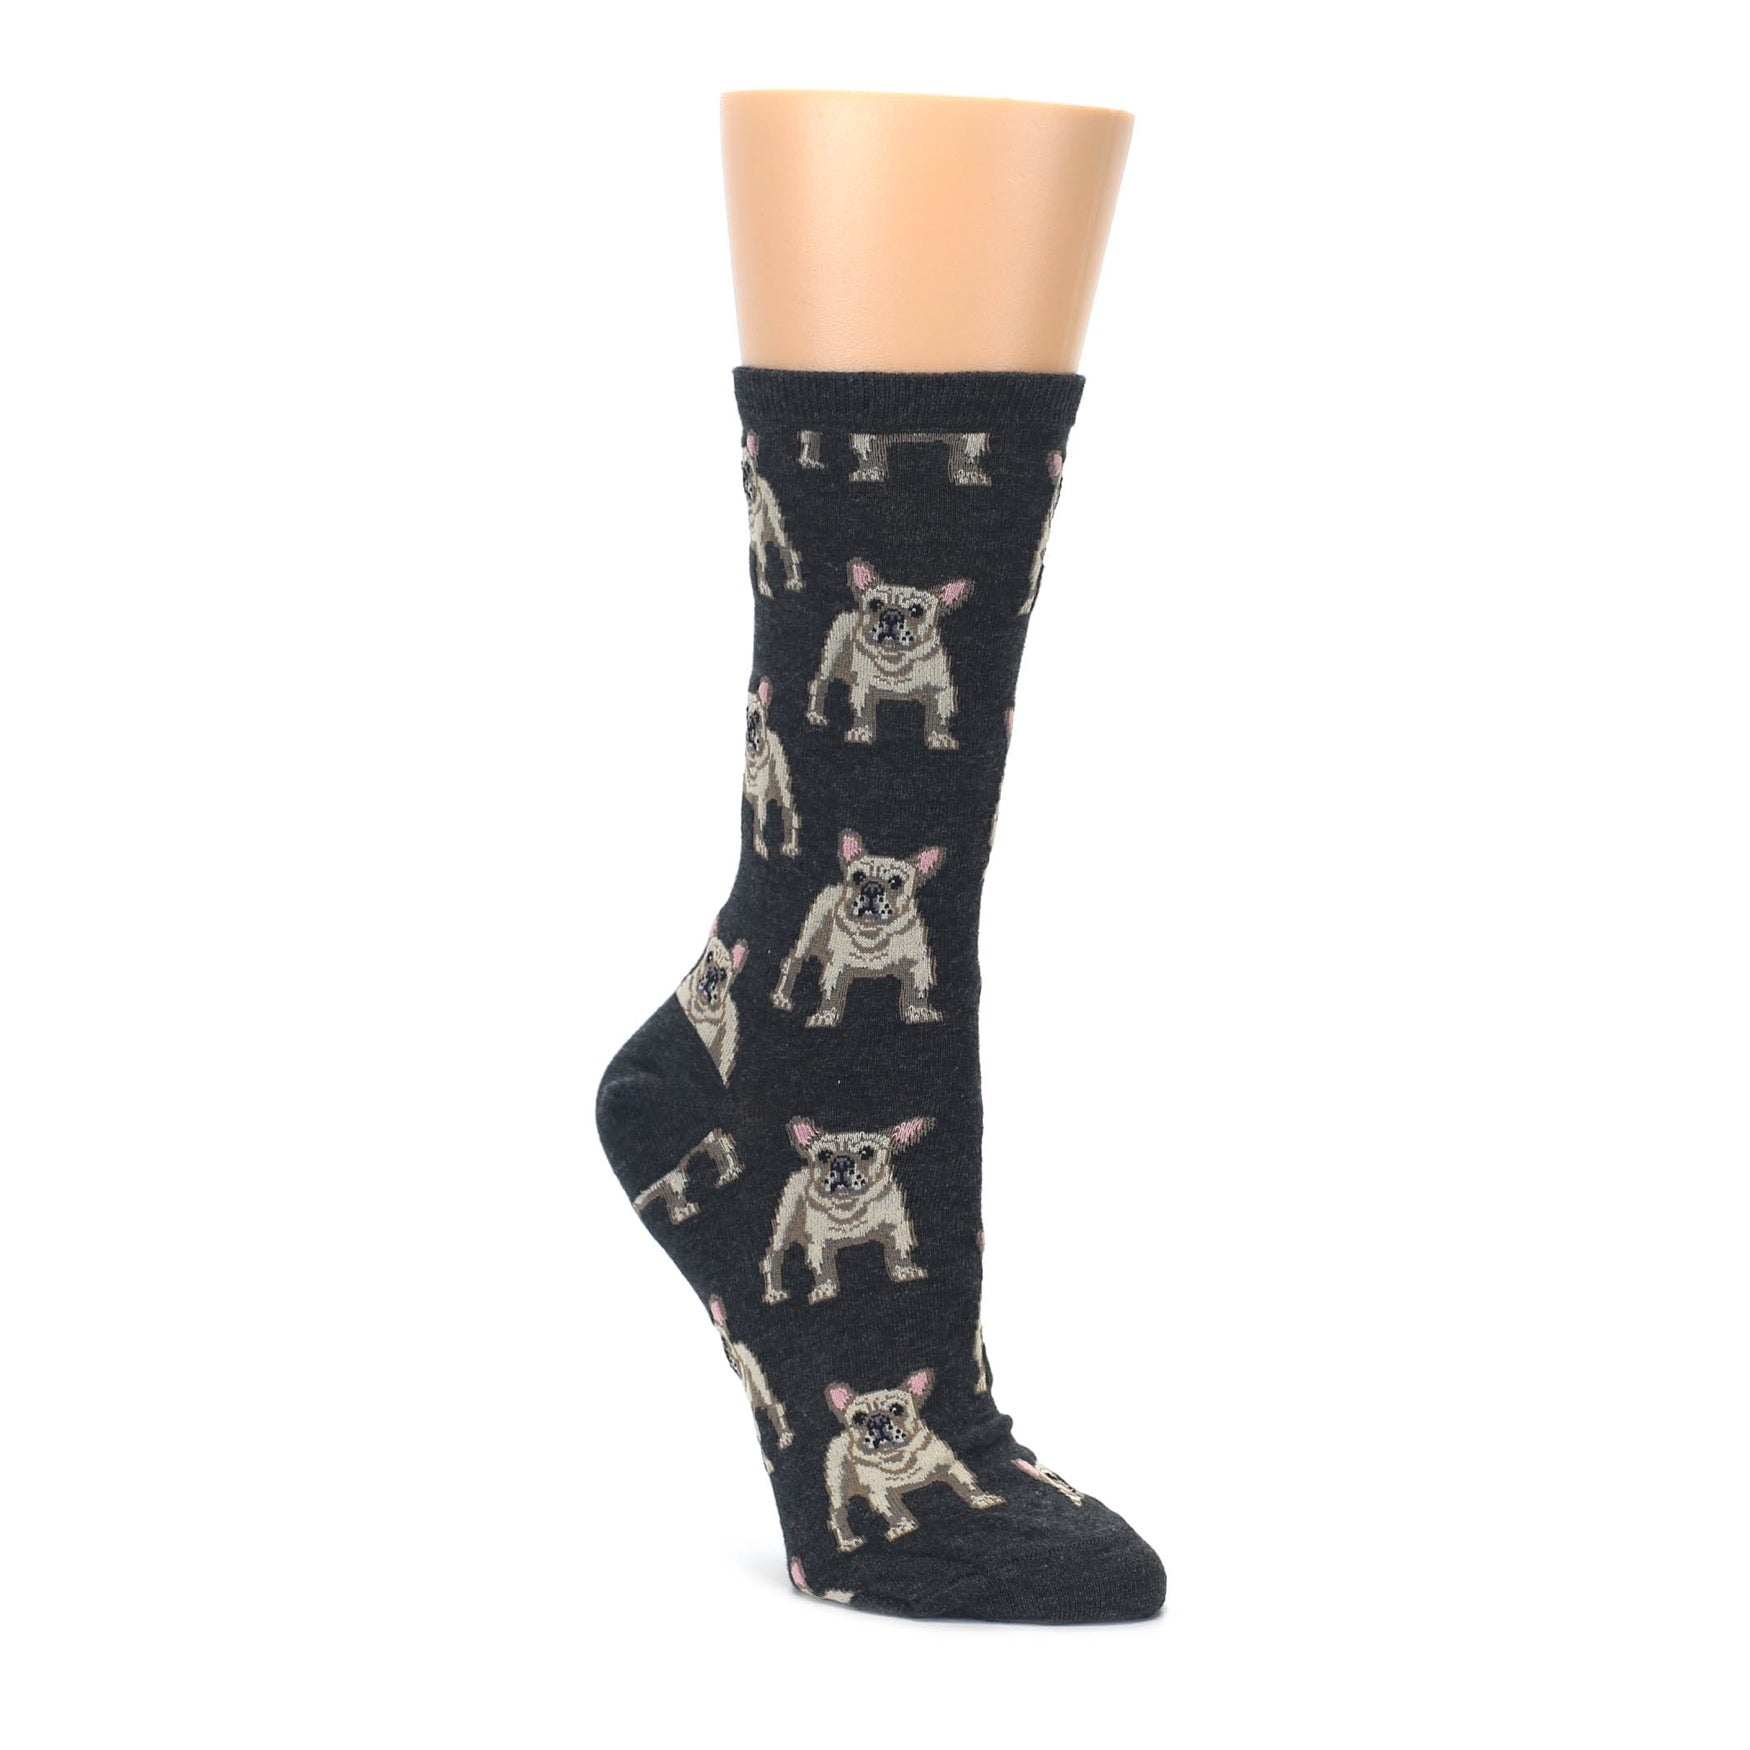 heather gray frenchie dog women's novelty socksmith